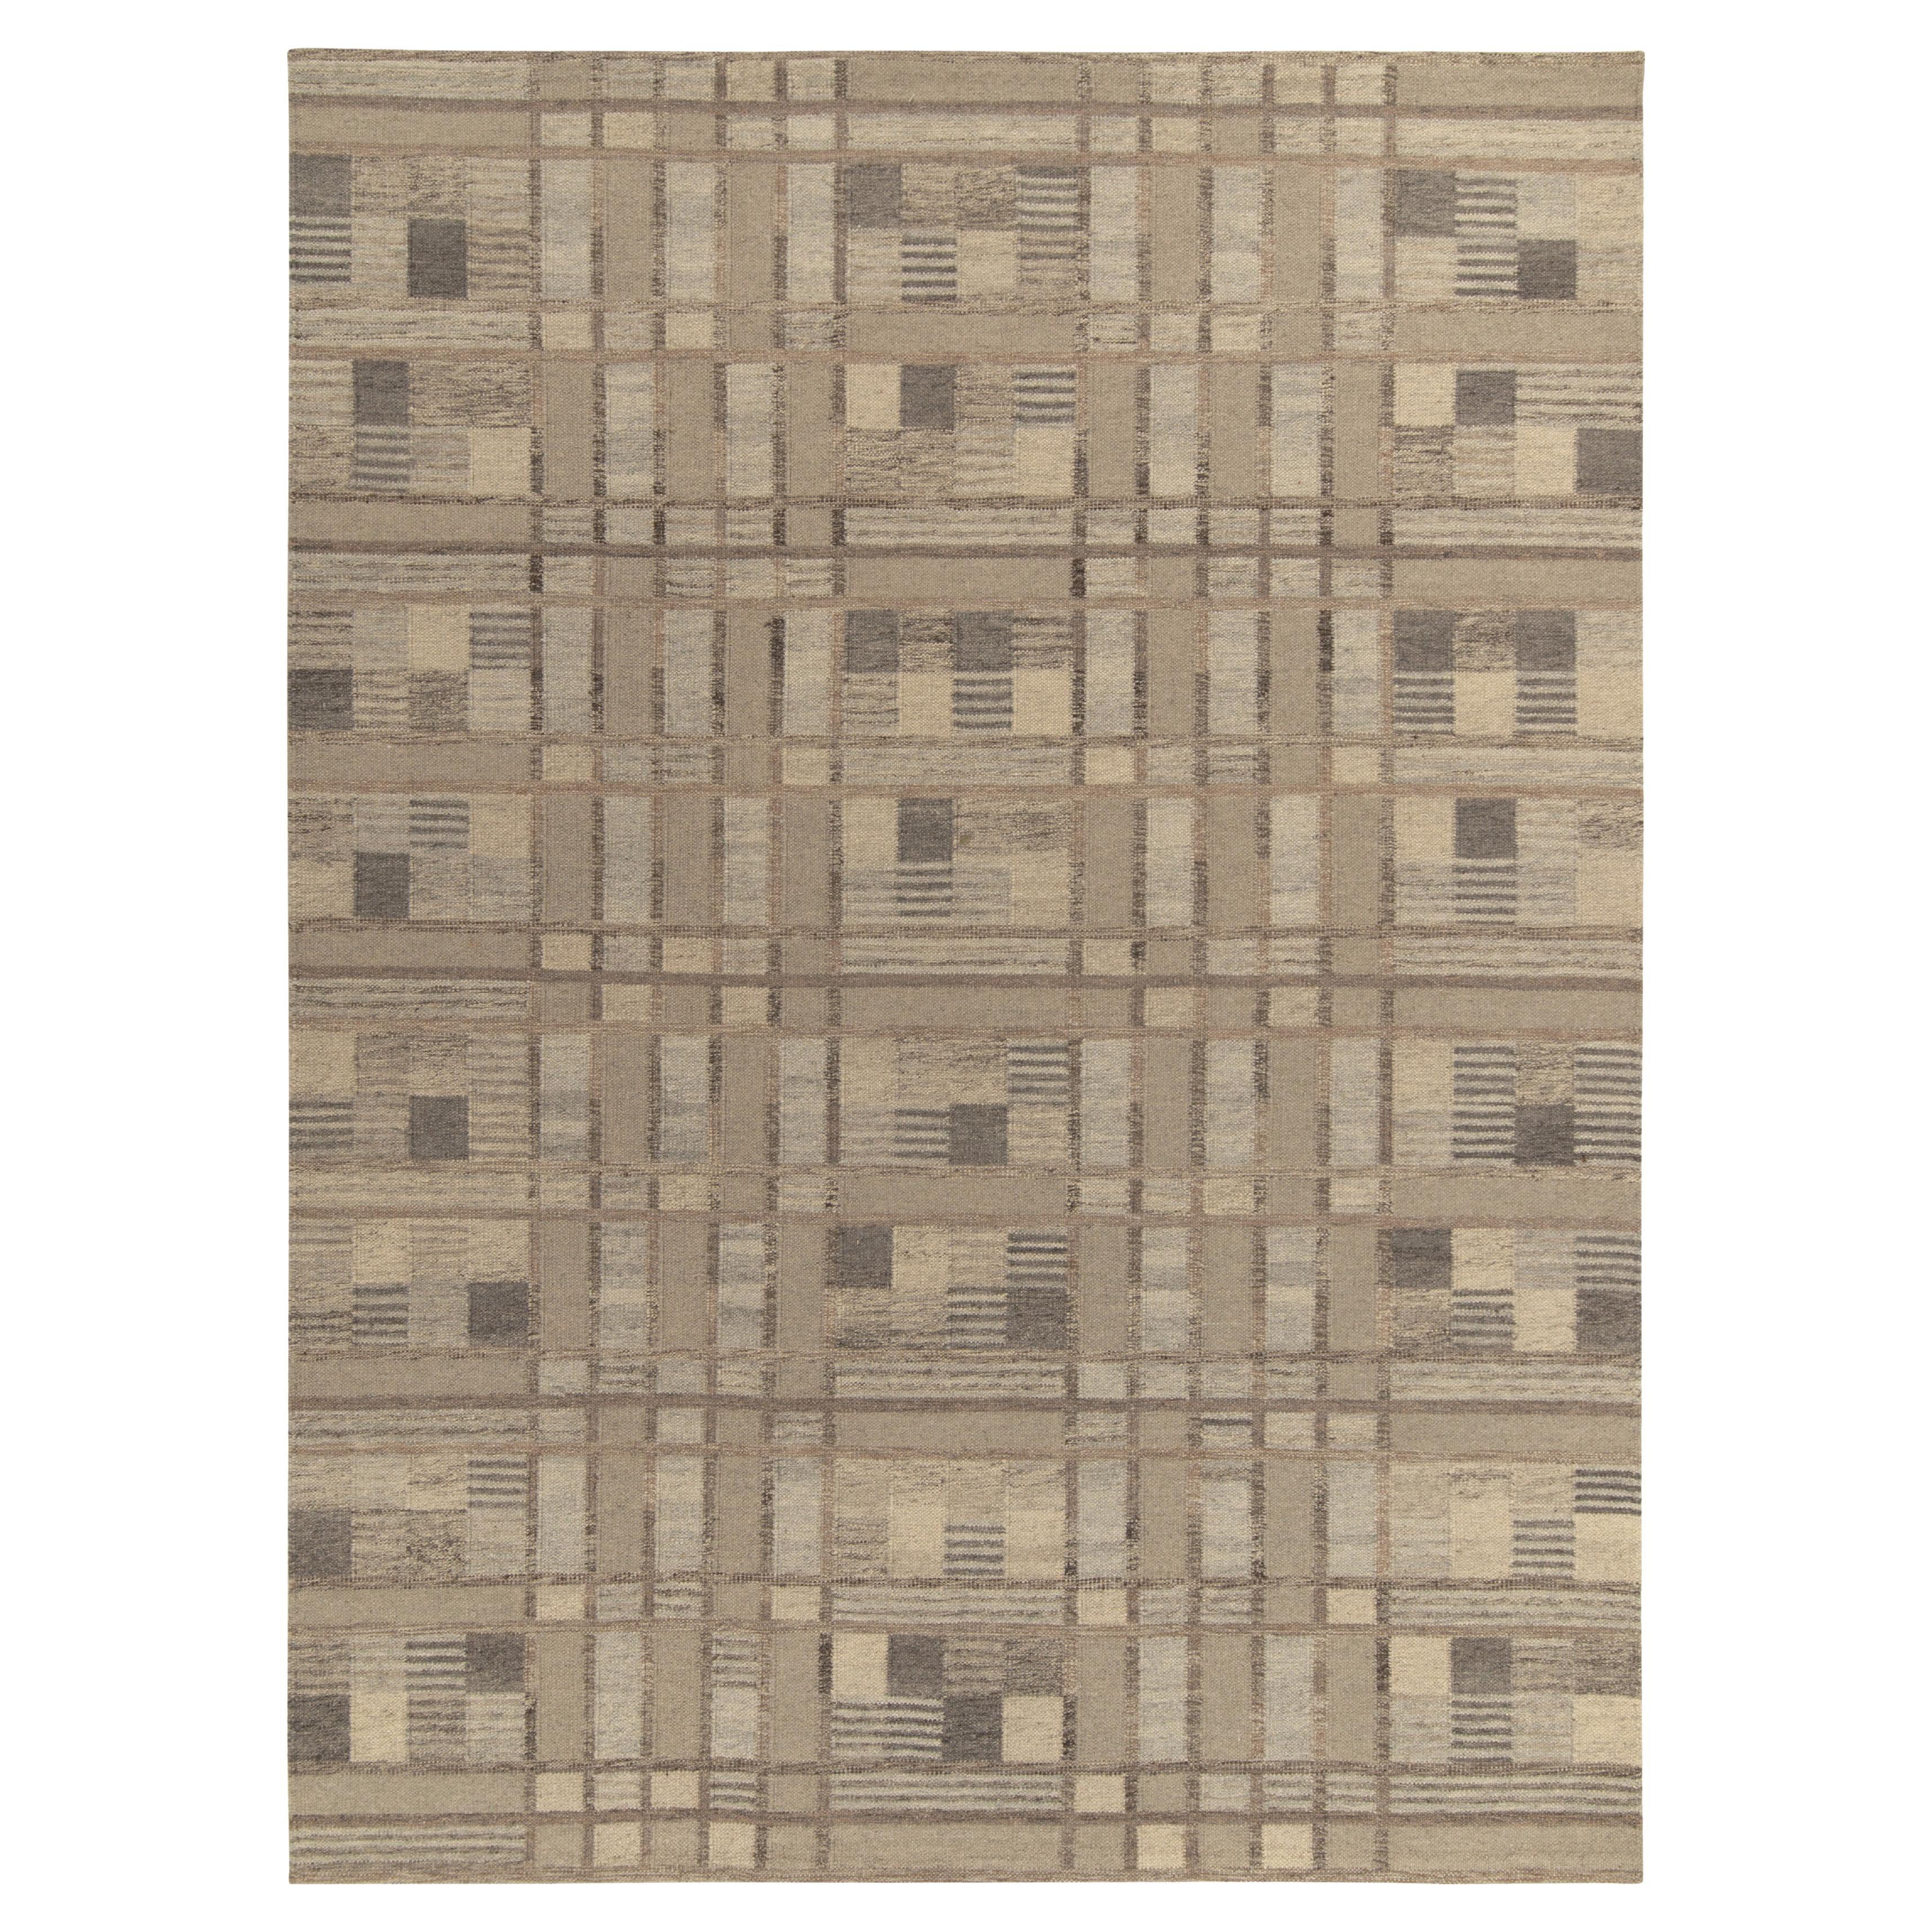 Teppich & Kelim-Teppich im skandinavischen Stil, Beige-Braun, Grau, Geometrisches Muster